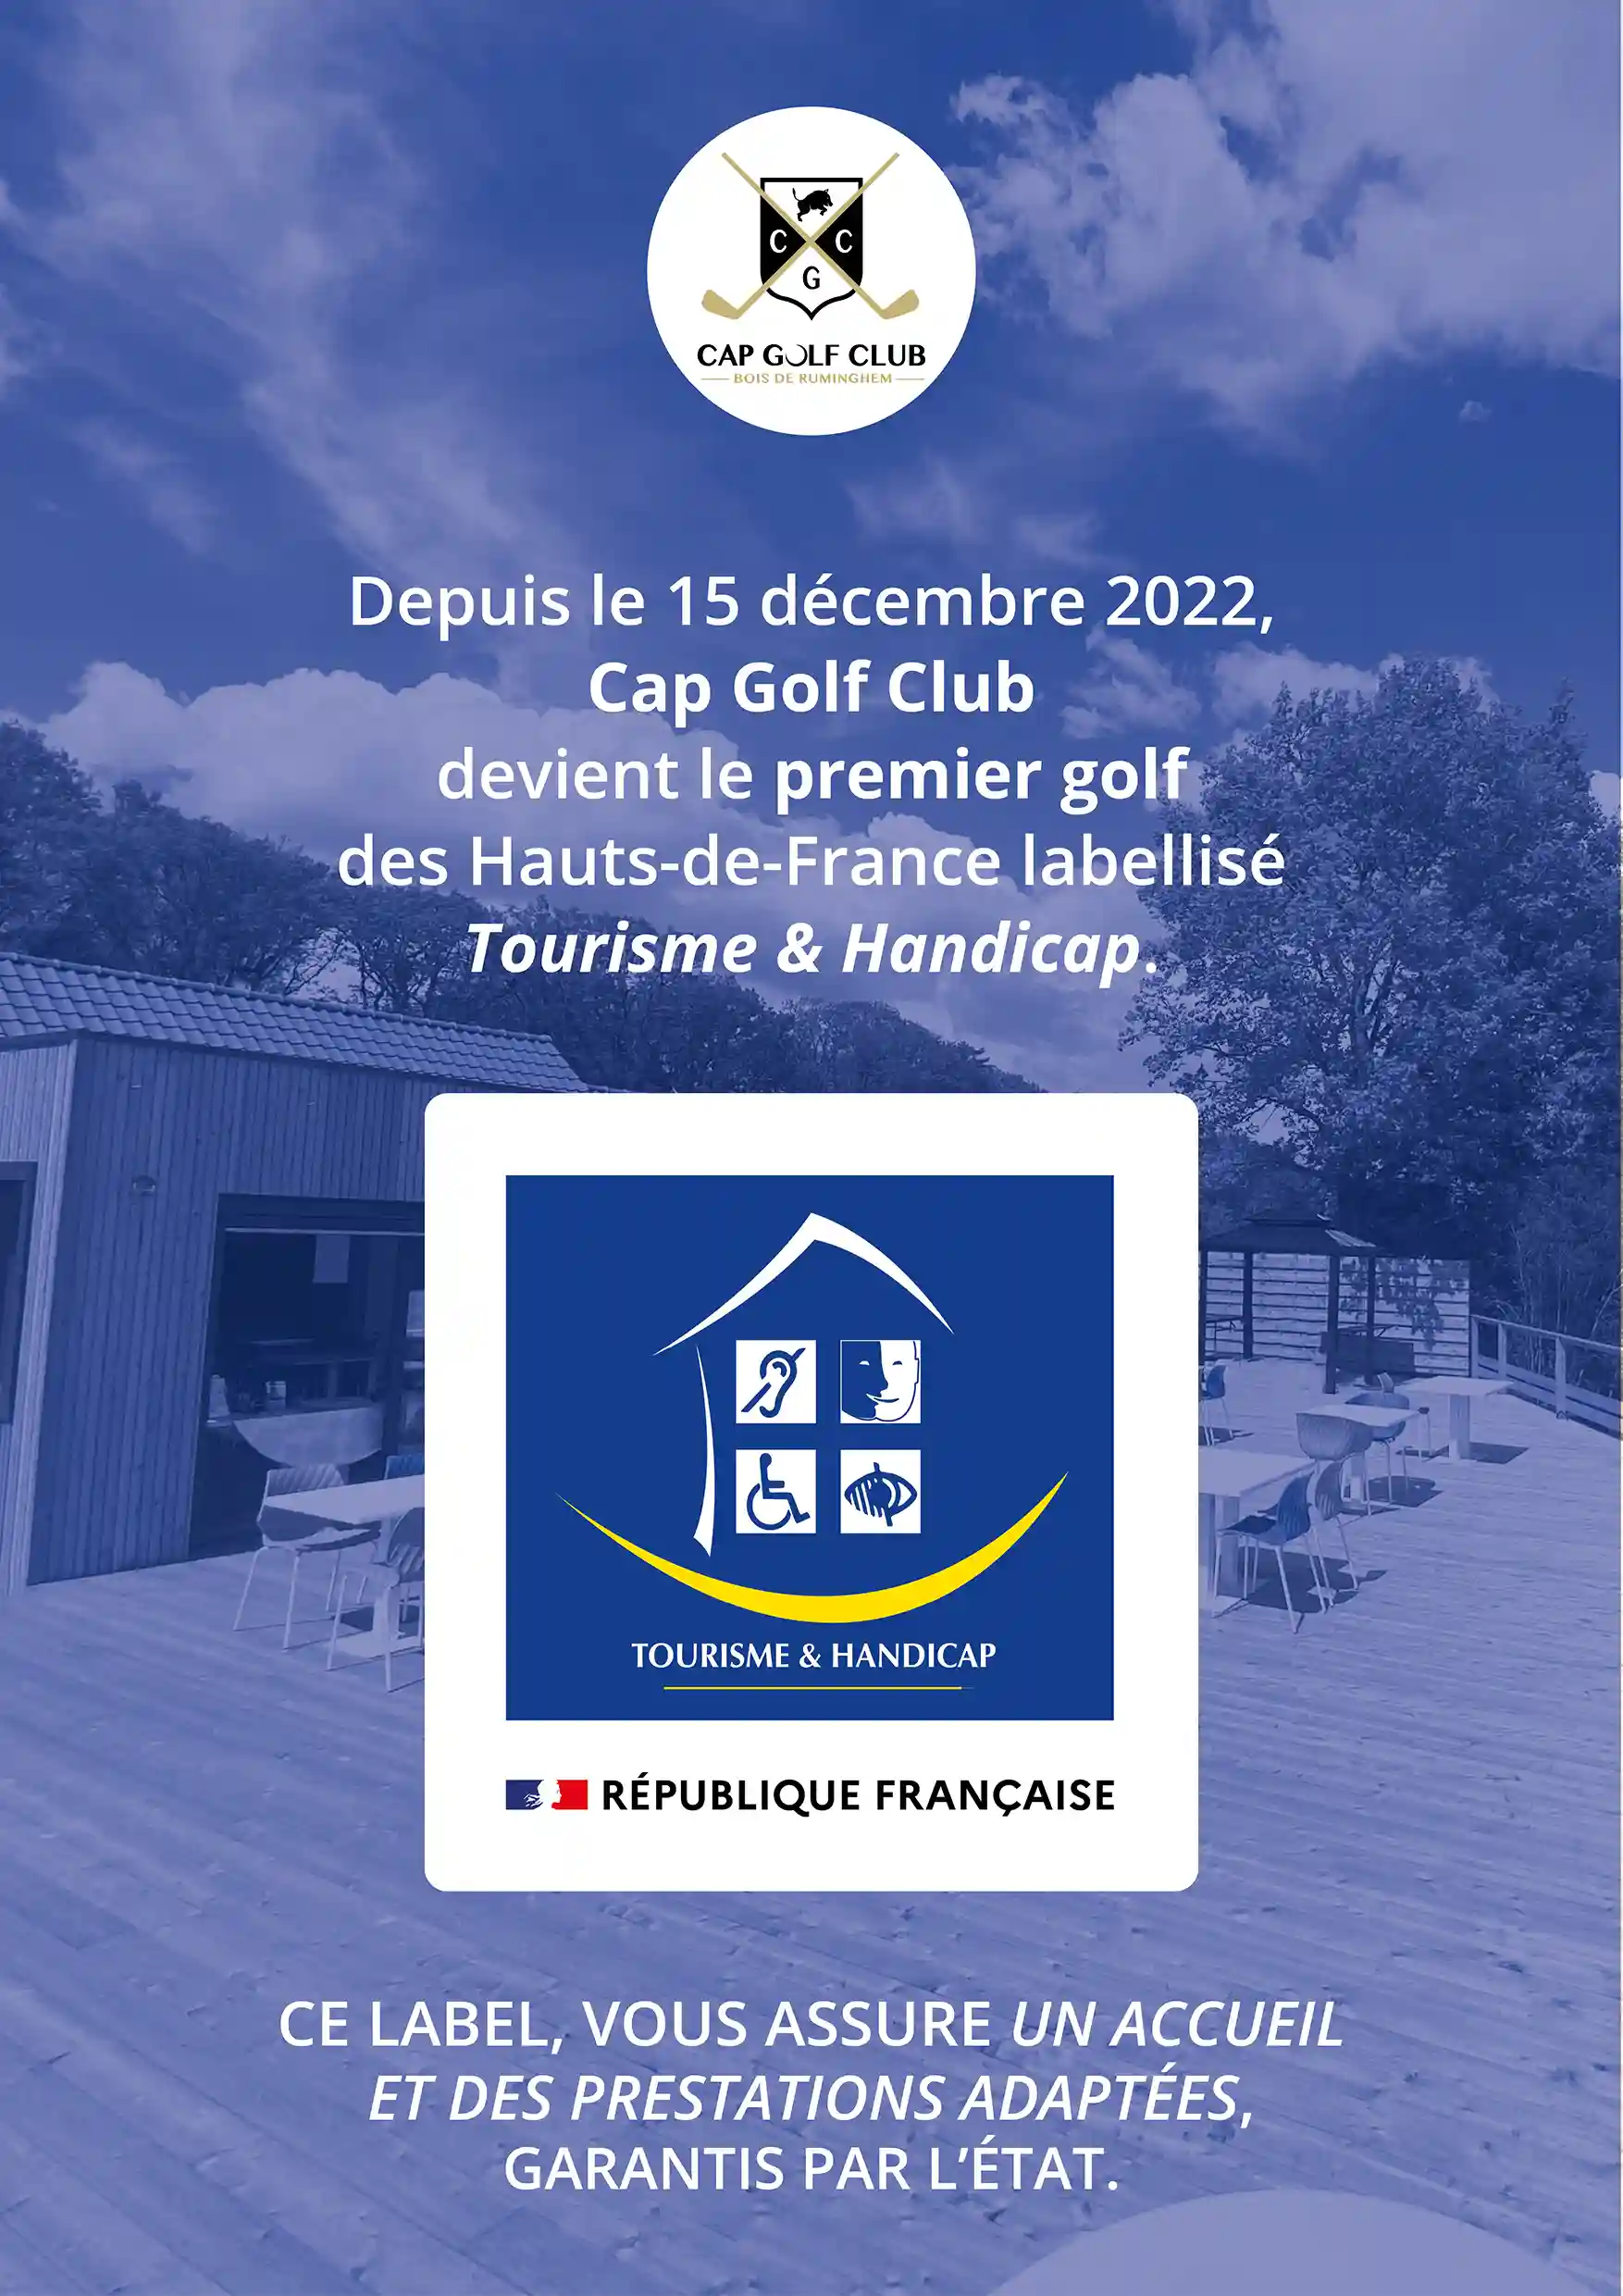 Cap Golf Club devient le premier golf labellisé "Tourisme & Handicap" des Hauts-de-France, et ce depuis le 15 décembre 2022.